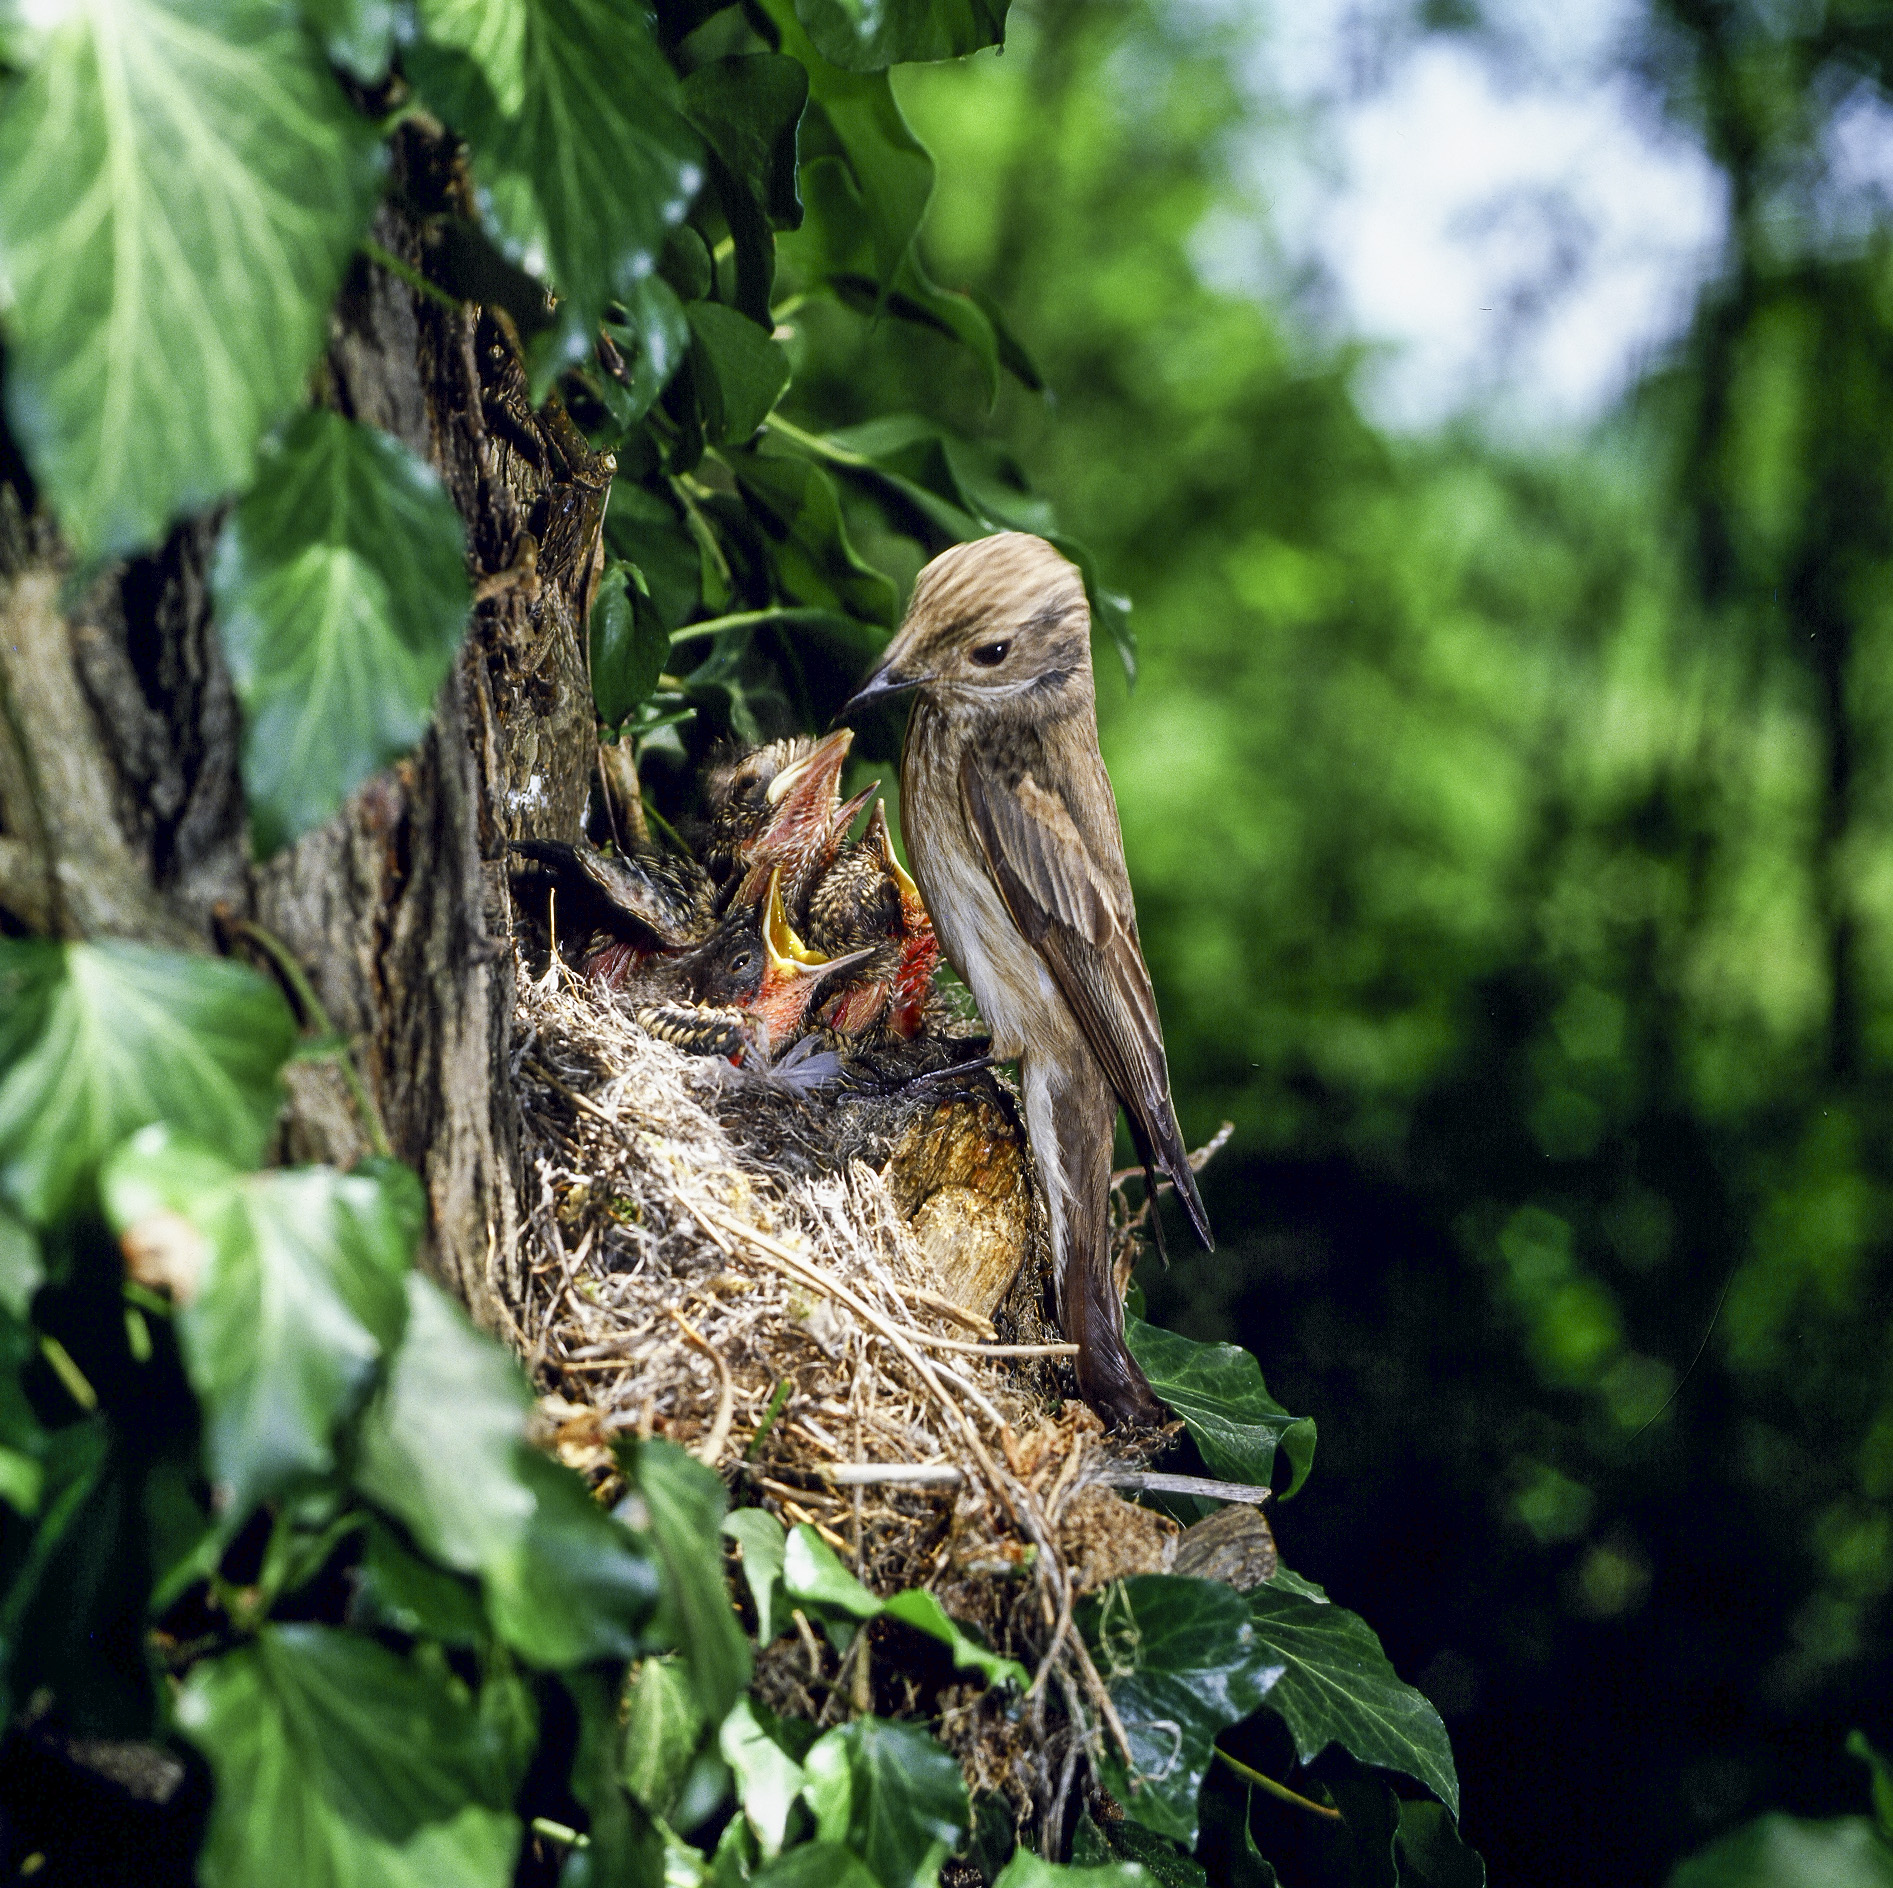 Flycatcher on the nest...